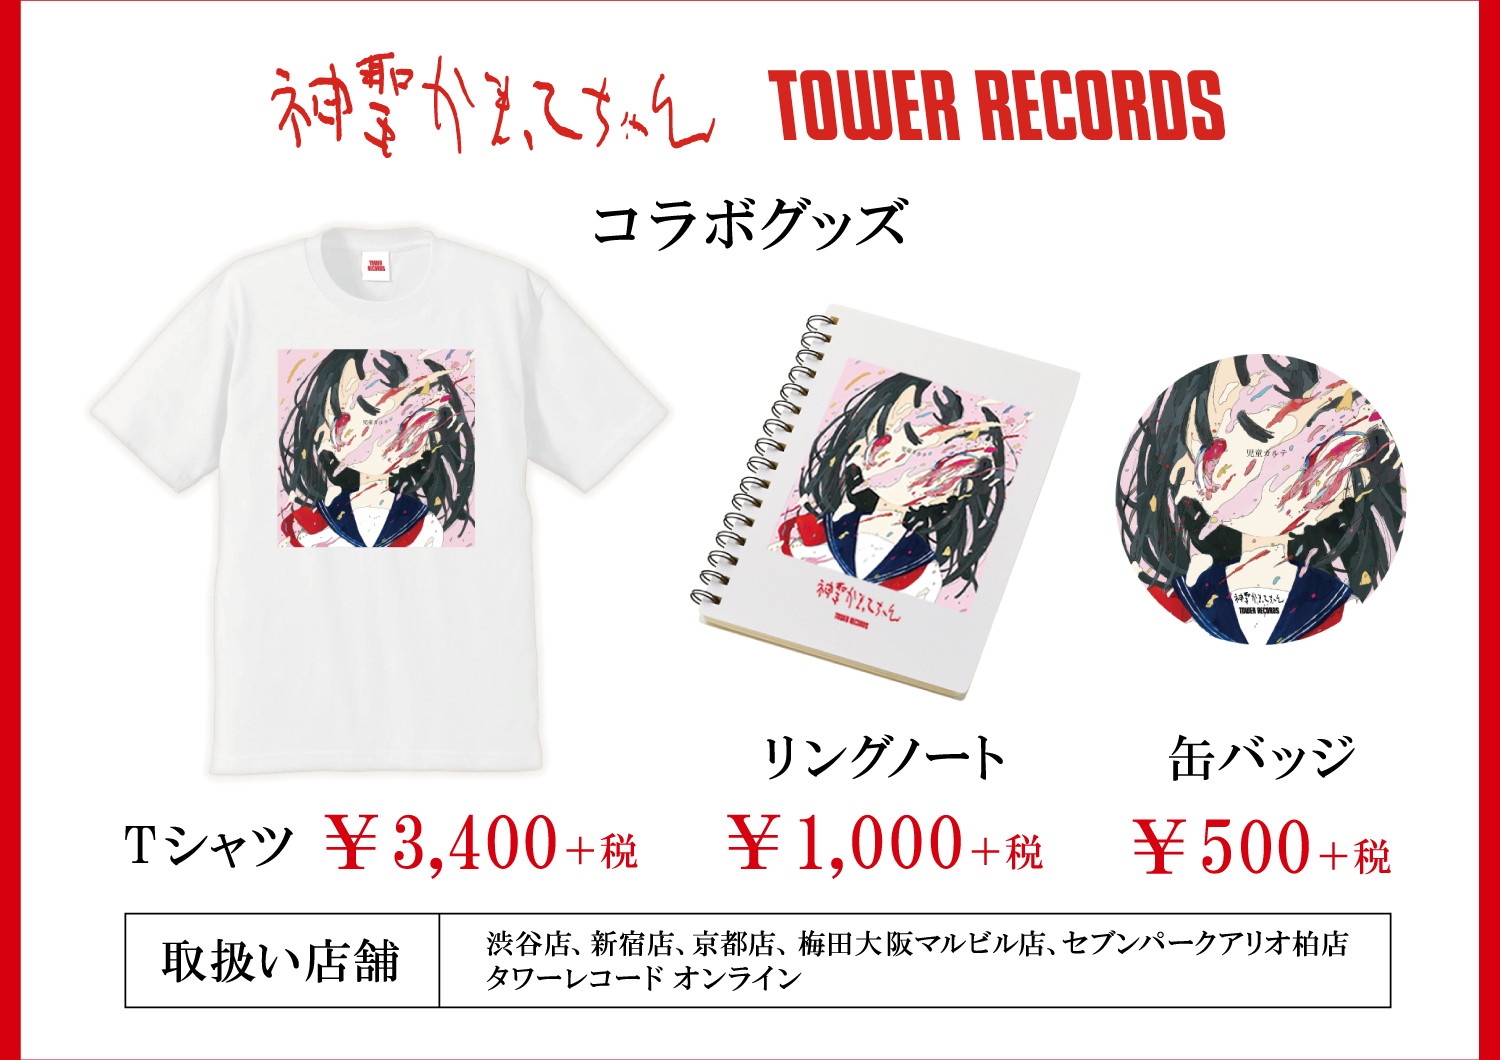 神聖かまってちゃん Tower Records コラボグッズ発売決定 神聖かまってちゃん Warner Music Japan